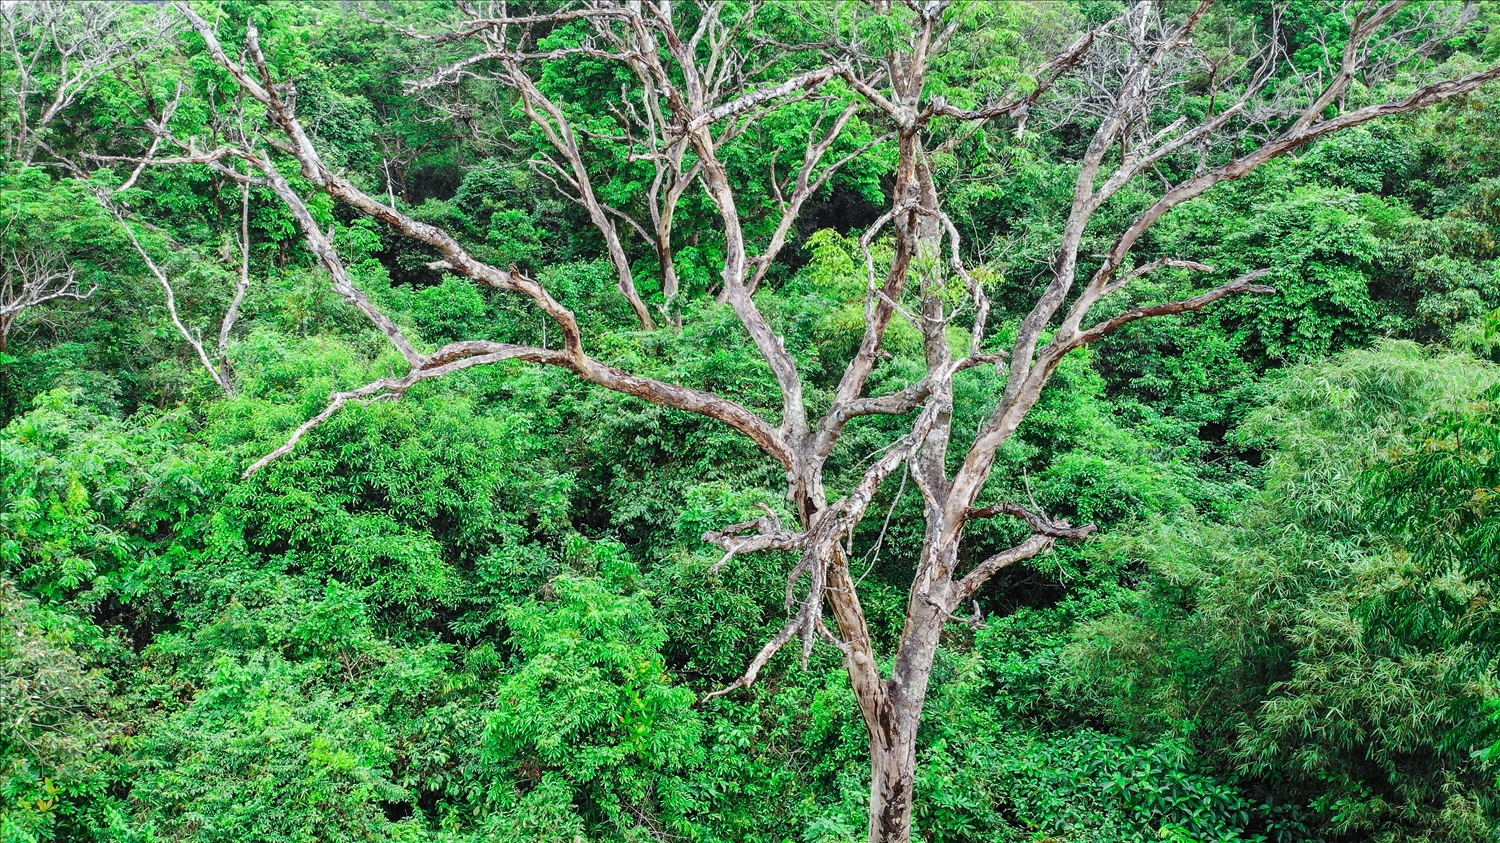 Hiện rừng lim ở xã Cẩm Tú có một số cây chết khô. Nhưng không cơ quan chức năng hay người dân nào được phép chặt hạ